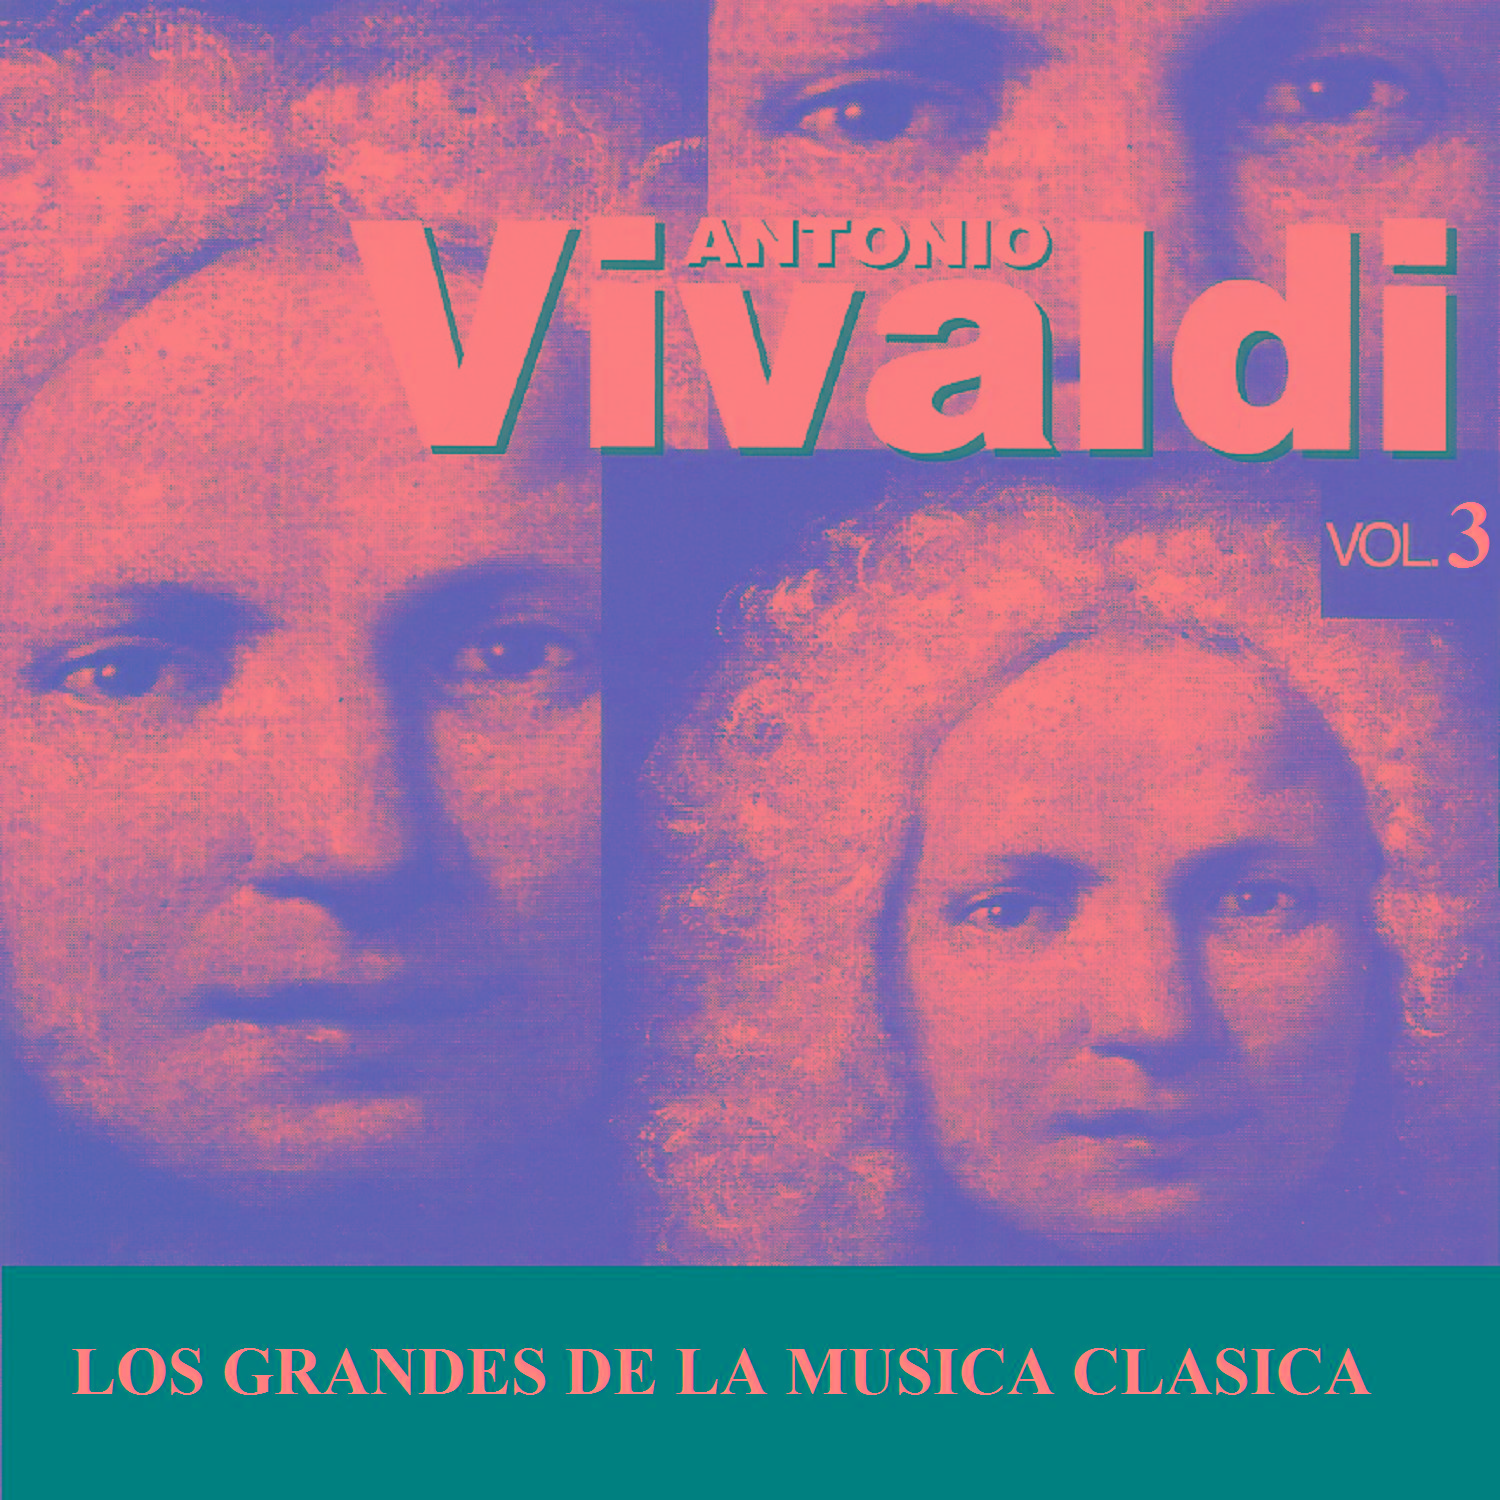 Los Grandes de la Musica Clasica - Antonio Vivaldi Vol. 3